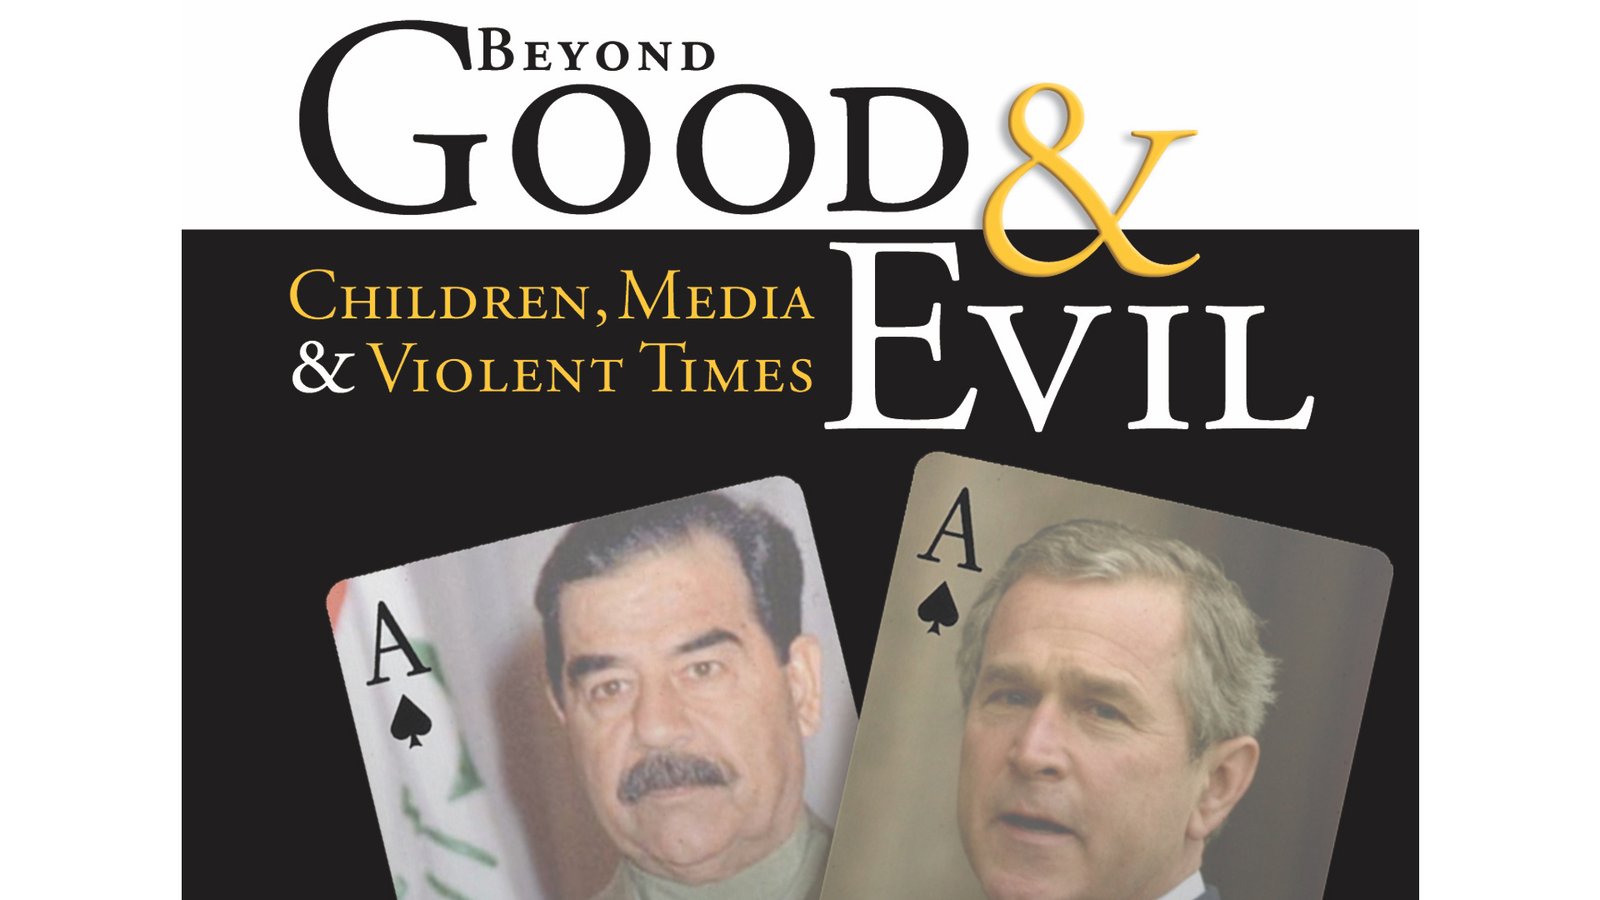 Beyond Good & Evil - Children, Media & Violent Times